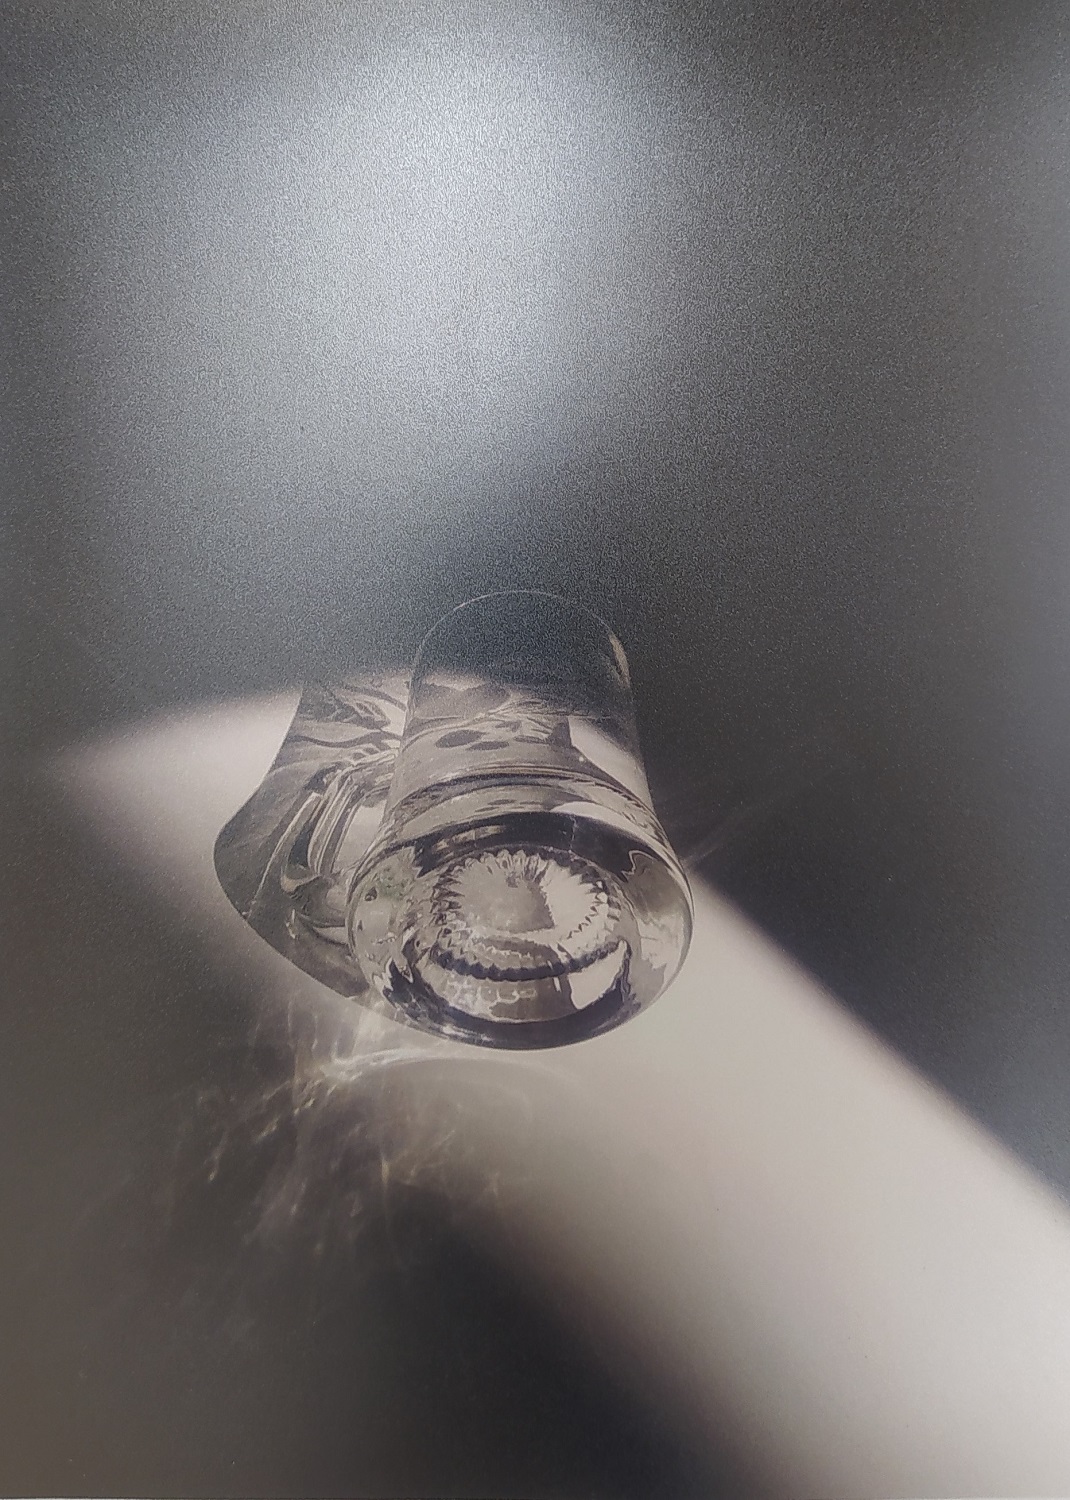 Czarno-białe zdjęcie przedstawiające leżący, szklany kieliszek.